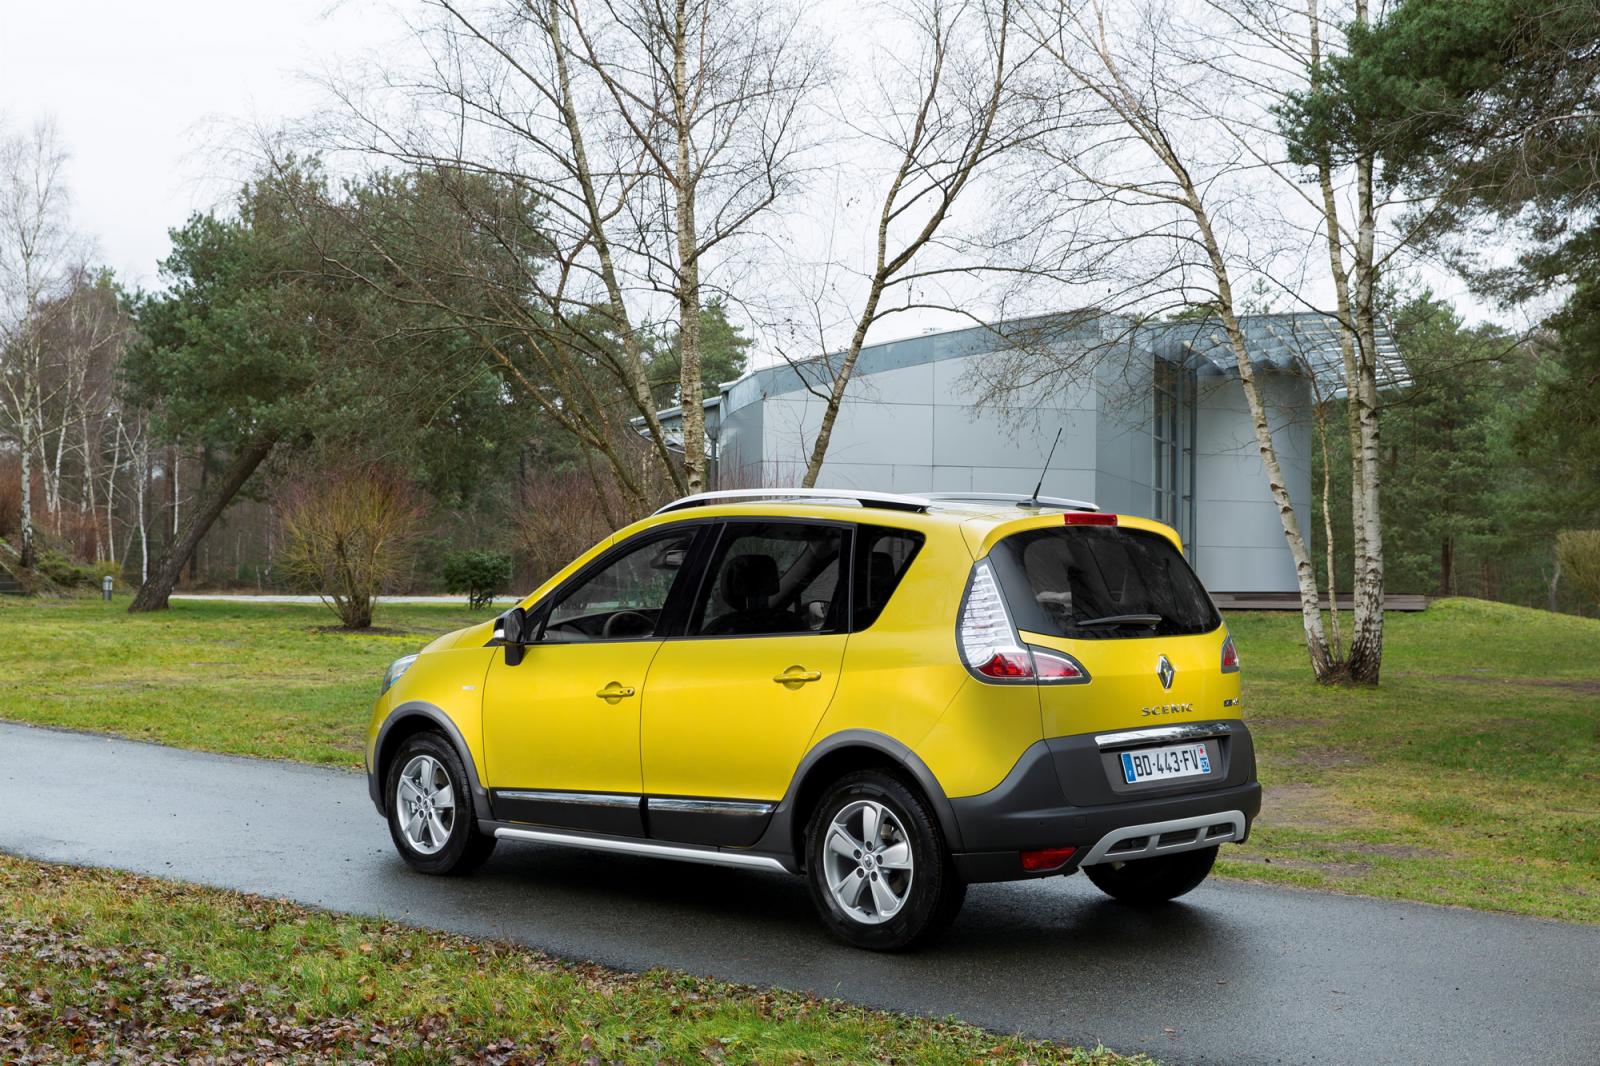 Renault Scénic XMOD para famílias mais aventureiras